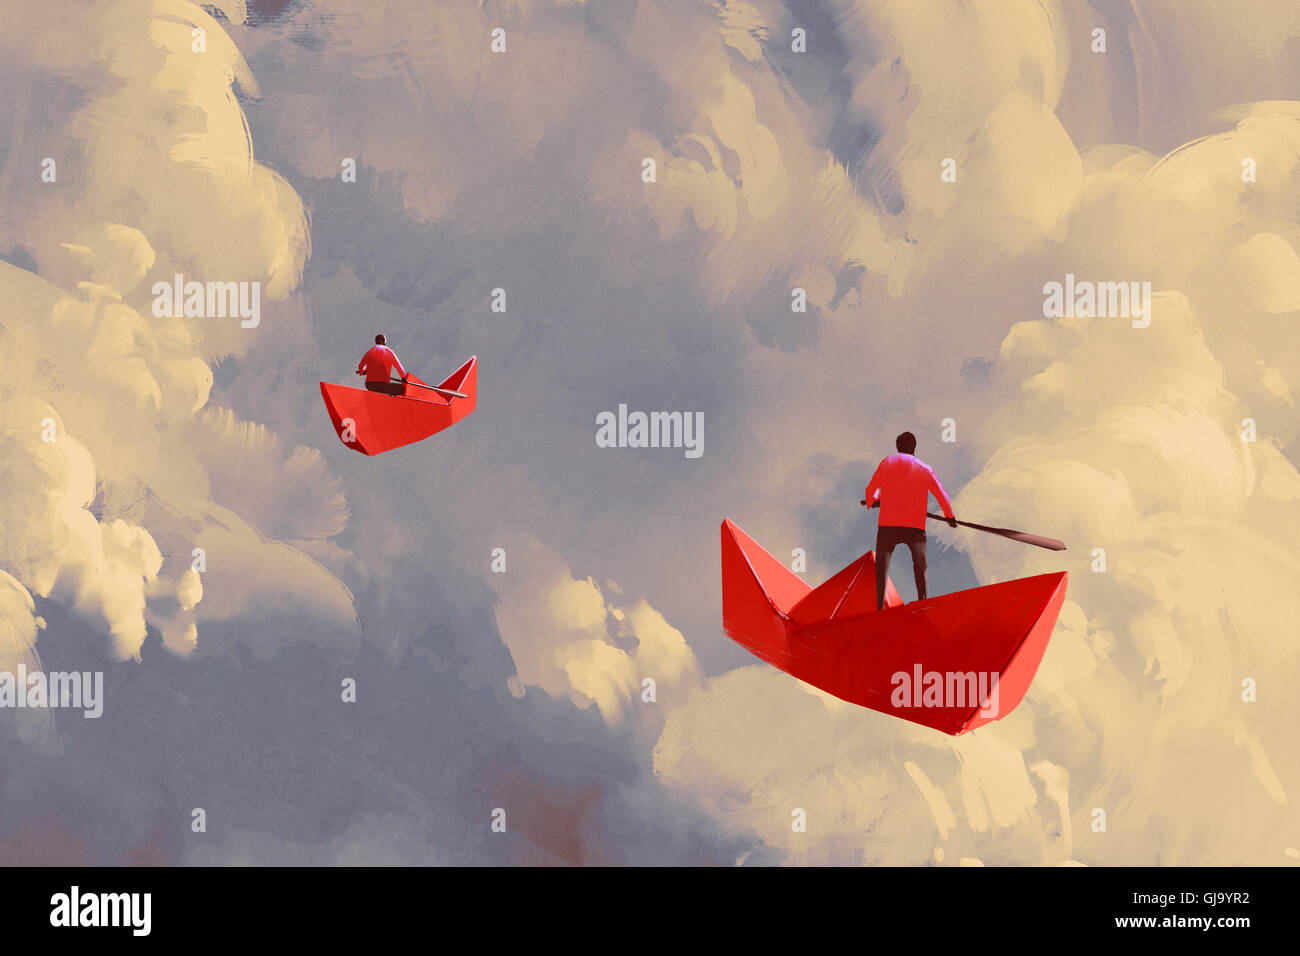 Gli uomini su origami carta rossa barche galleggianti nel cielo nuvoloso, illustrazione pittura Foto Stock